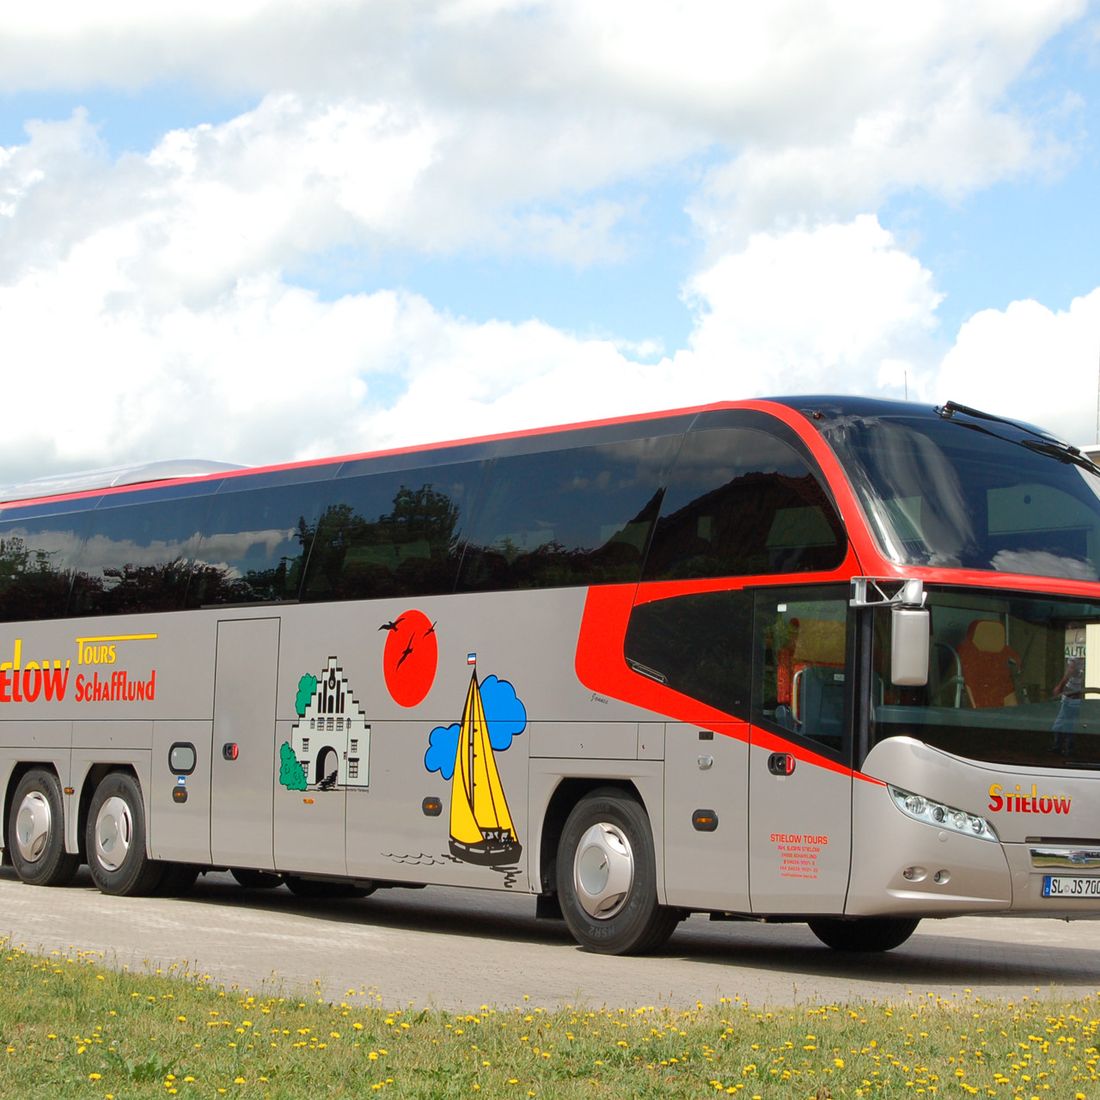 Bequem und voll ausgestattet Busse von Stielow